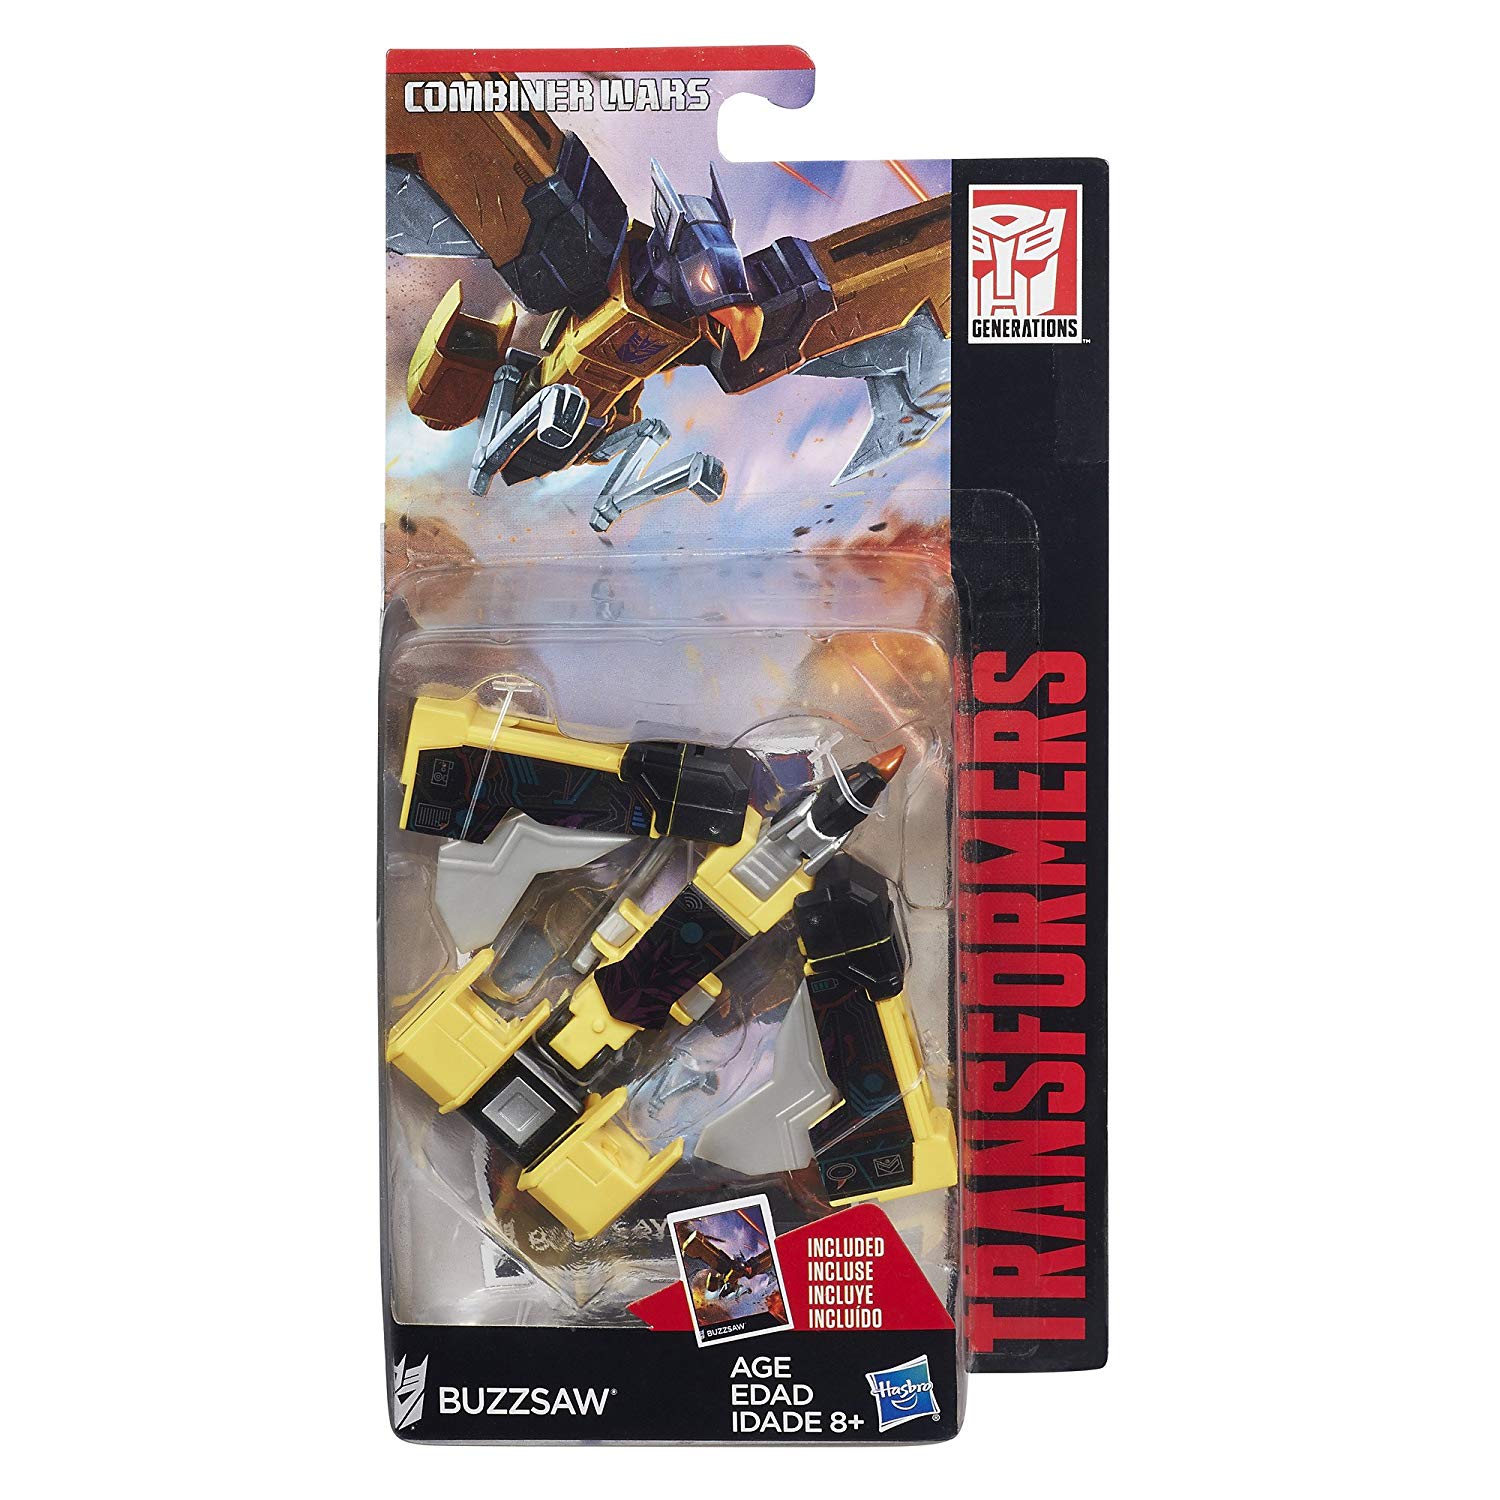 Transformers Generations Legends Combiner Wars Buzzsaw Action Figure